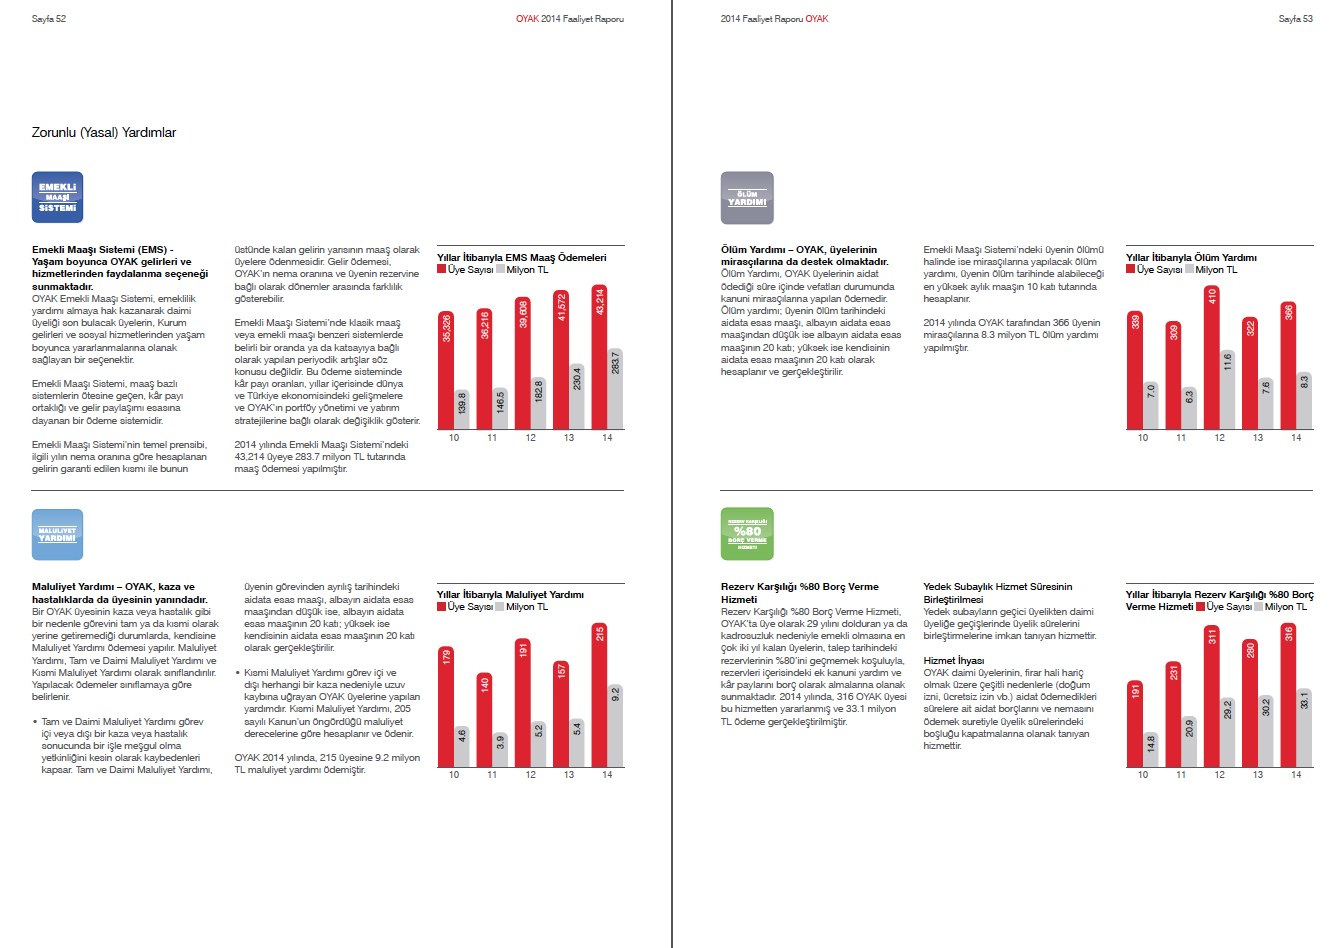 OYAK / 2014 Faaliyet Raporu / 2014 Annual Report